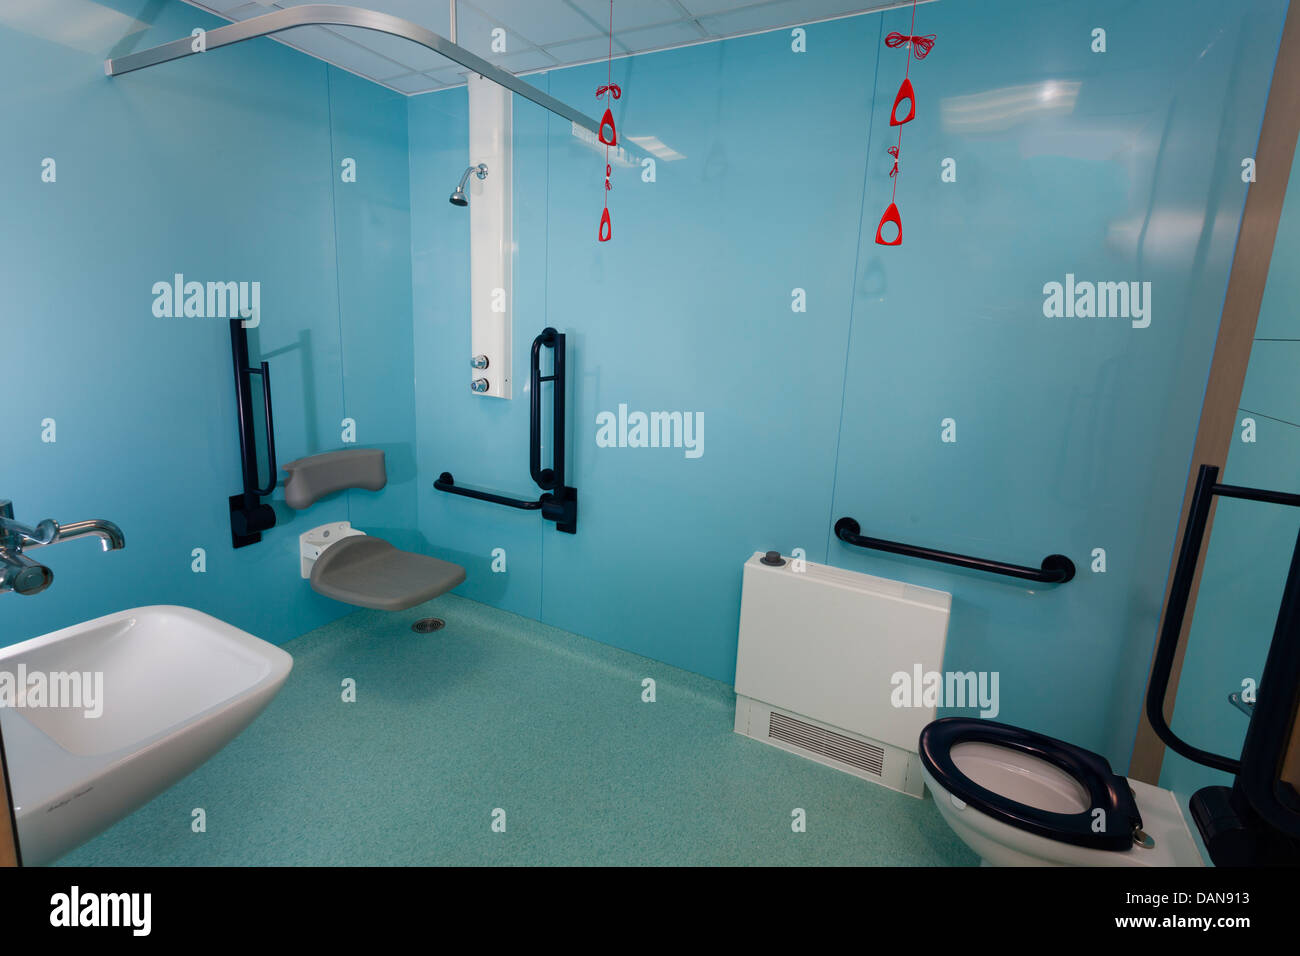 Krankenhaus Bad mit Behinderungen Hilfe leisten. Stockfoto